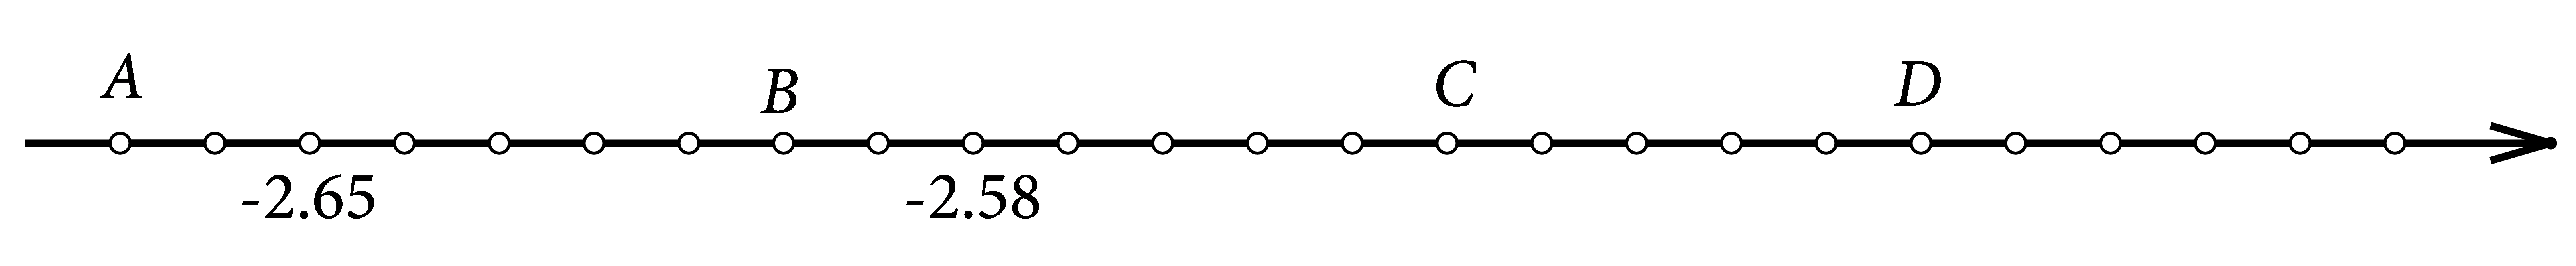 Slika prikazuje brojevni pravac na kojem su istaknute točke čije koordinate treba očitati. Točkama su pridružene decimalne koordinate.